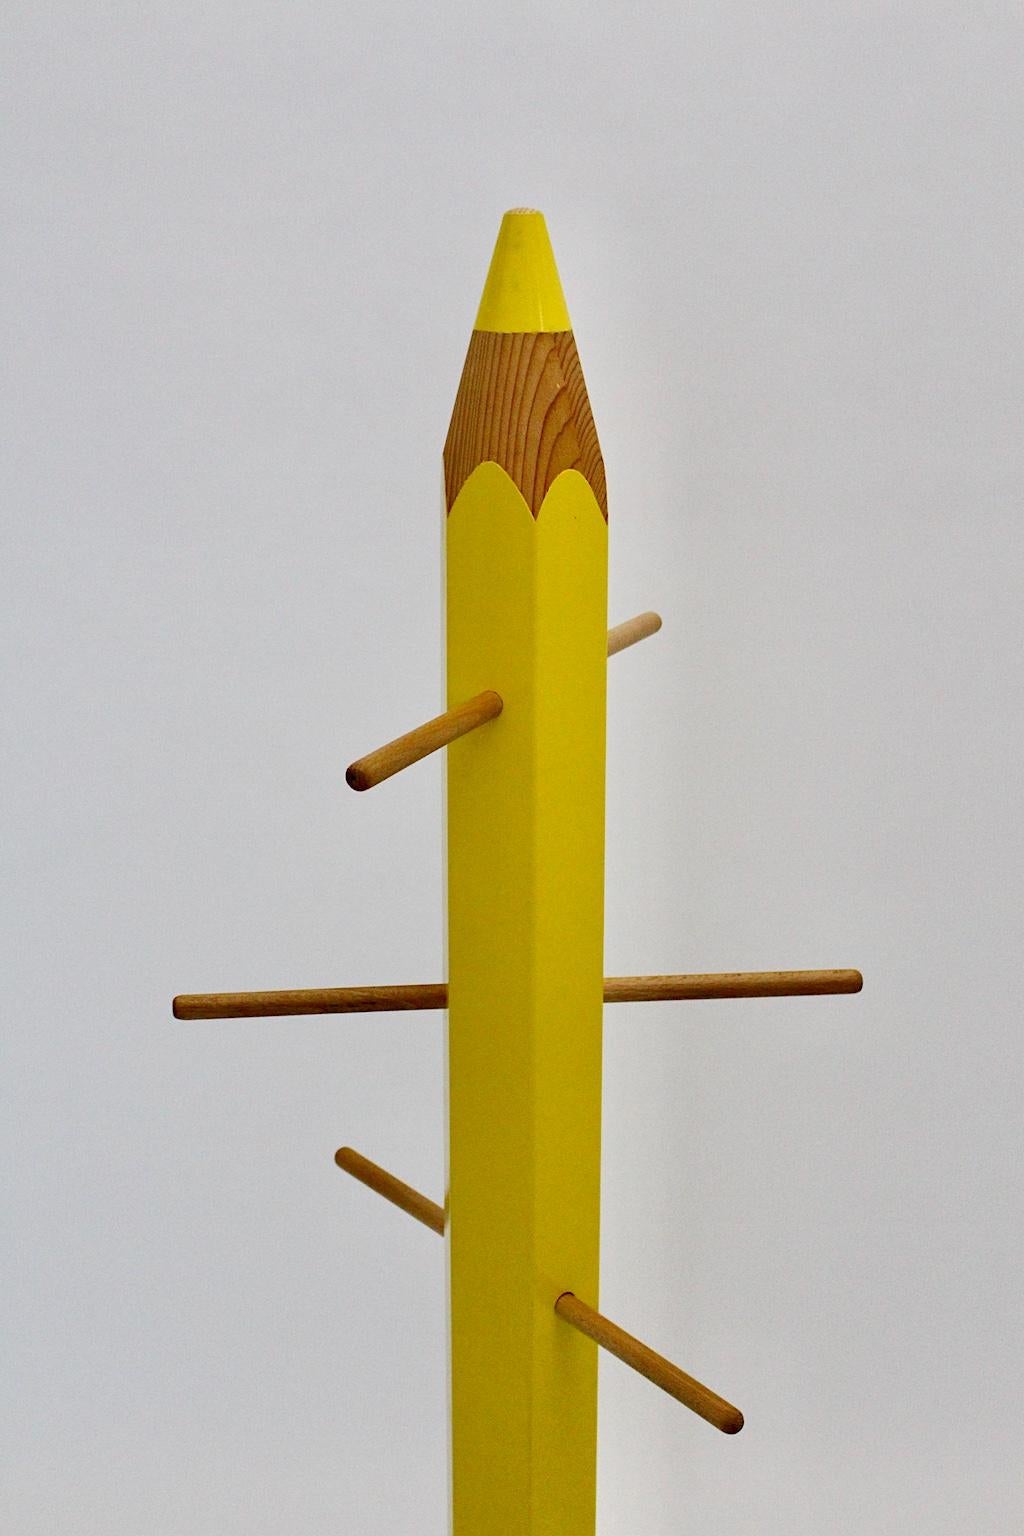 pencil coat rack